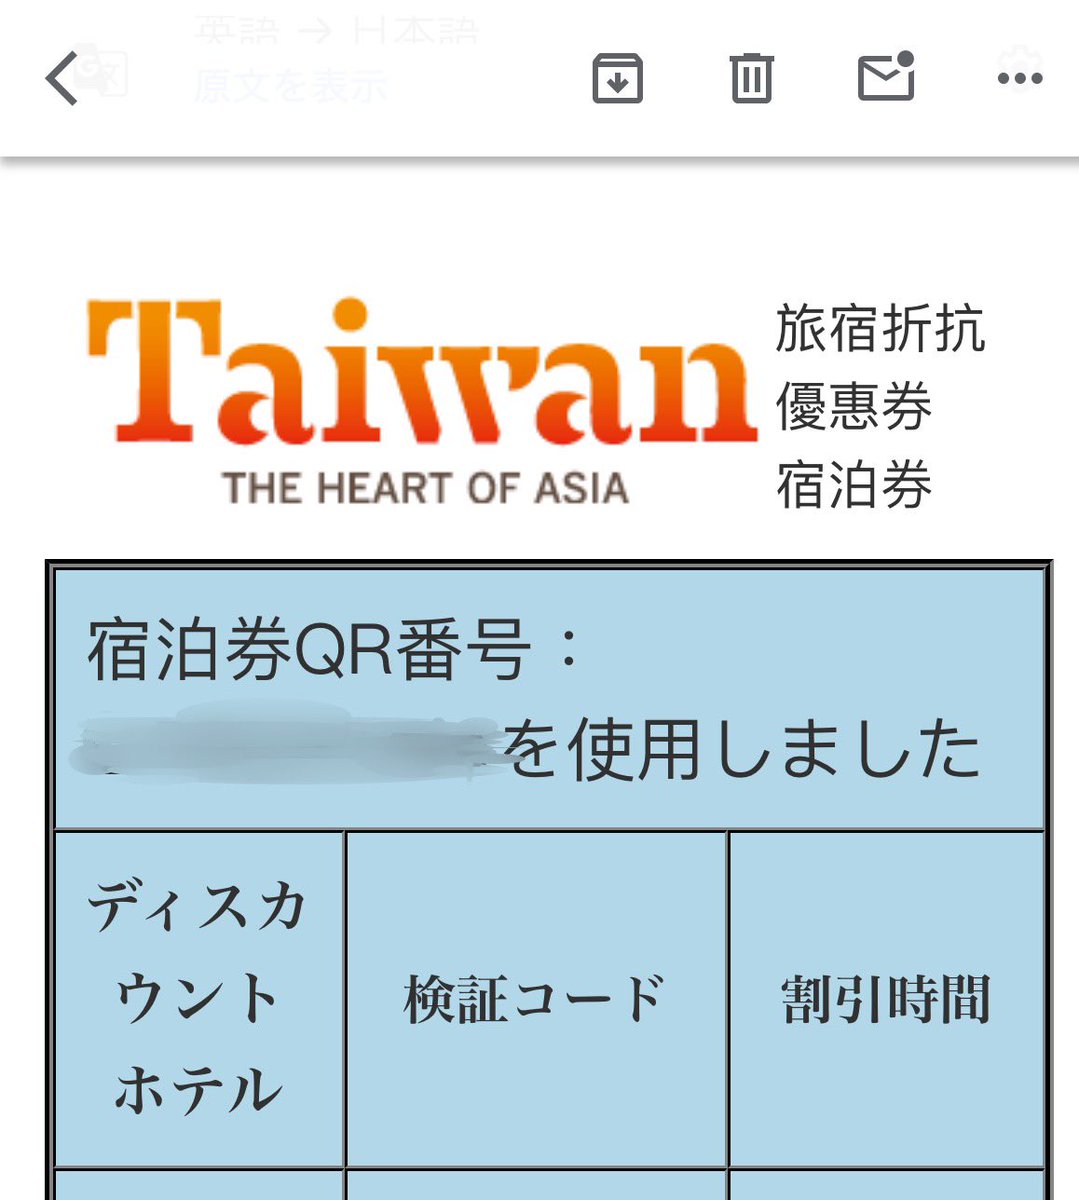 【振り返り台湾🇹🇼】イミグレを通過し荷物を受け取った後は、Taiwan the LUCKY LANDの宿泊クーポン（楽天トラベル当選分）を引き換えにブースへ。
日本人の方、連続で３人くらい当たっていて、歓声が上がっていましたよ😃
#202404あ台湾